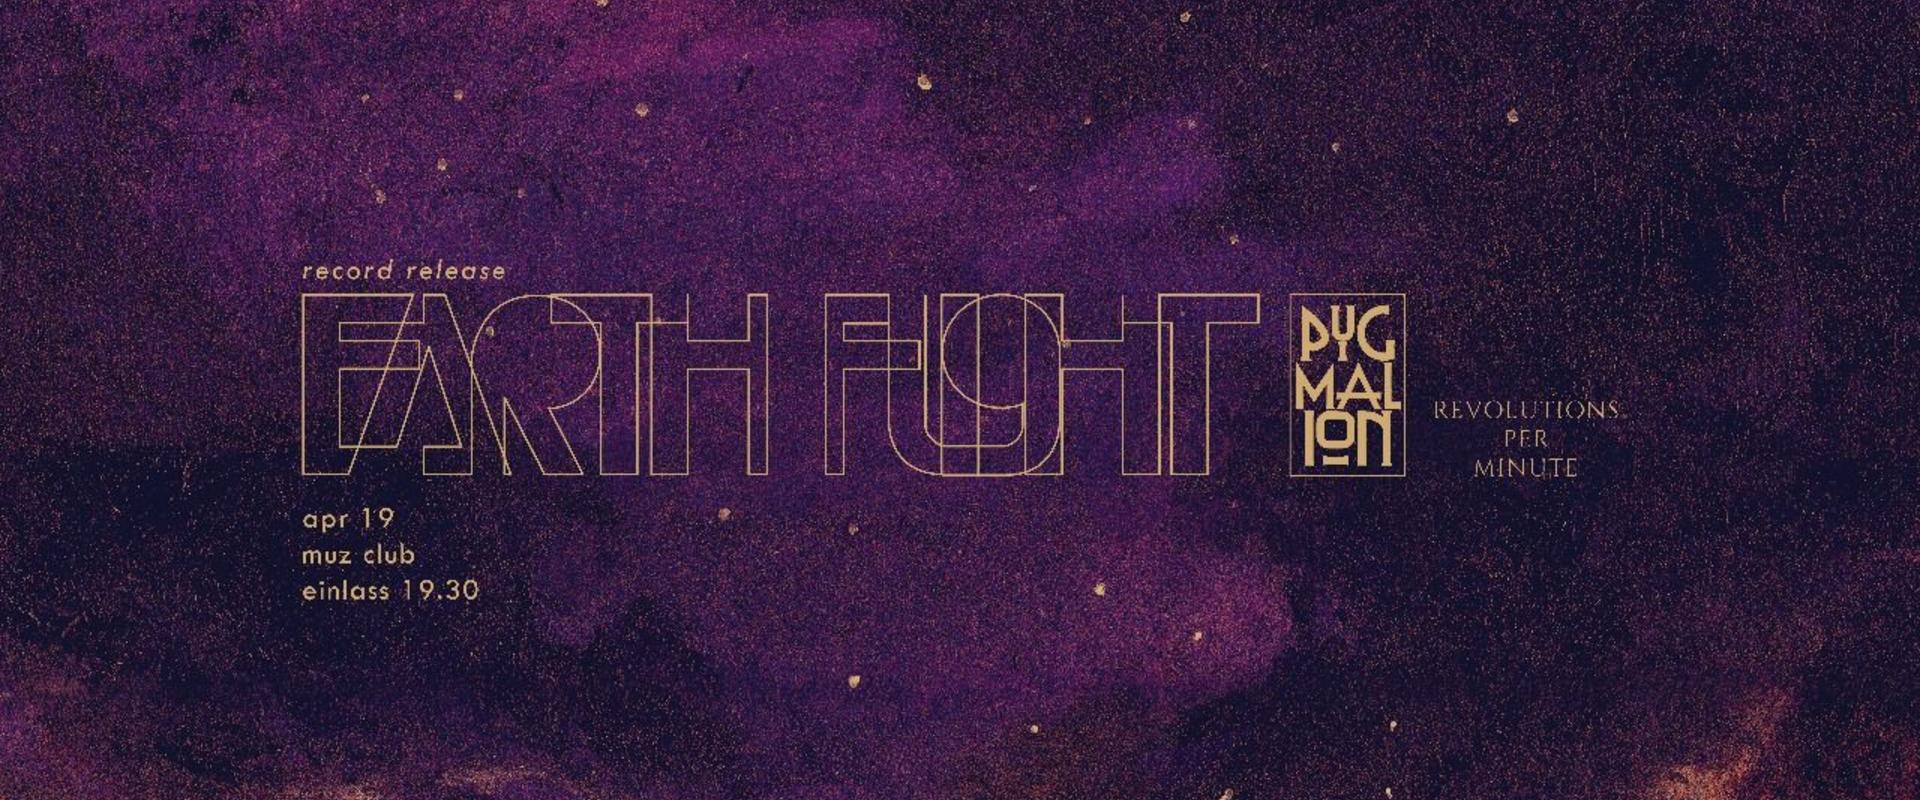 Earth Flight CD Release